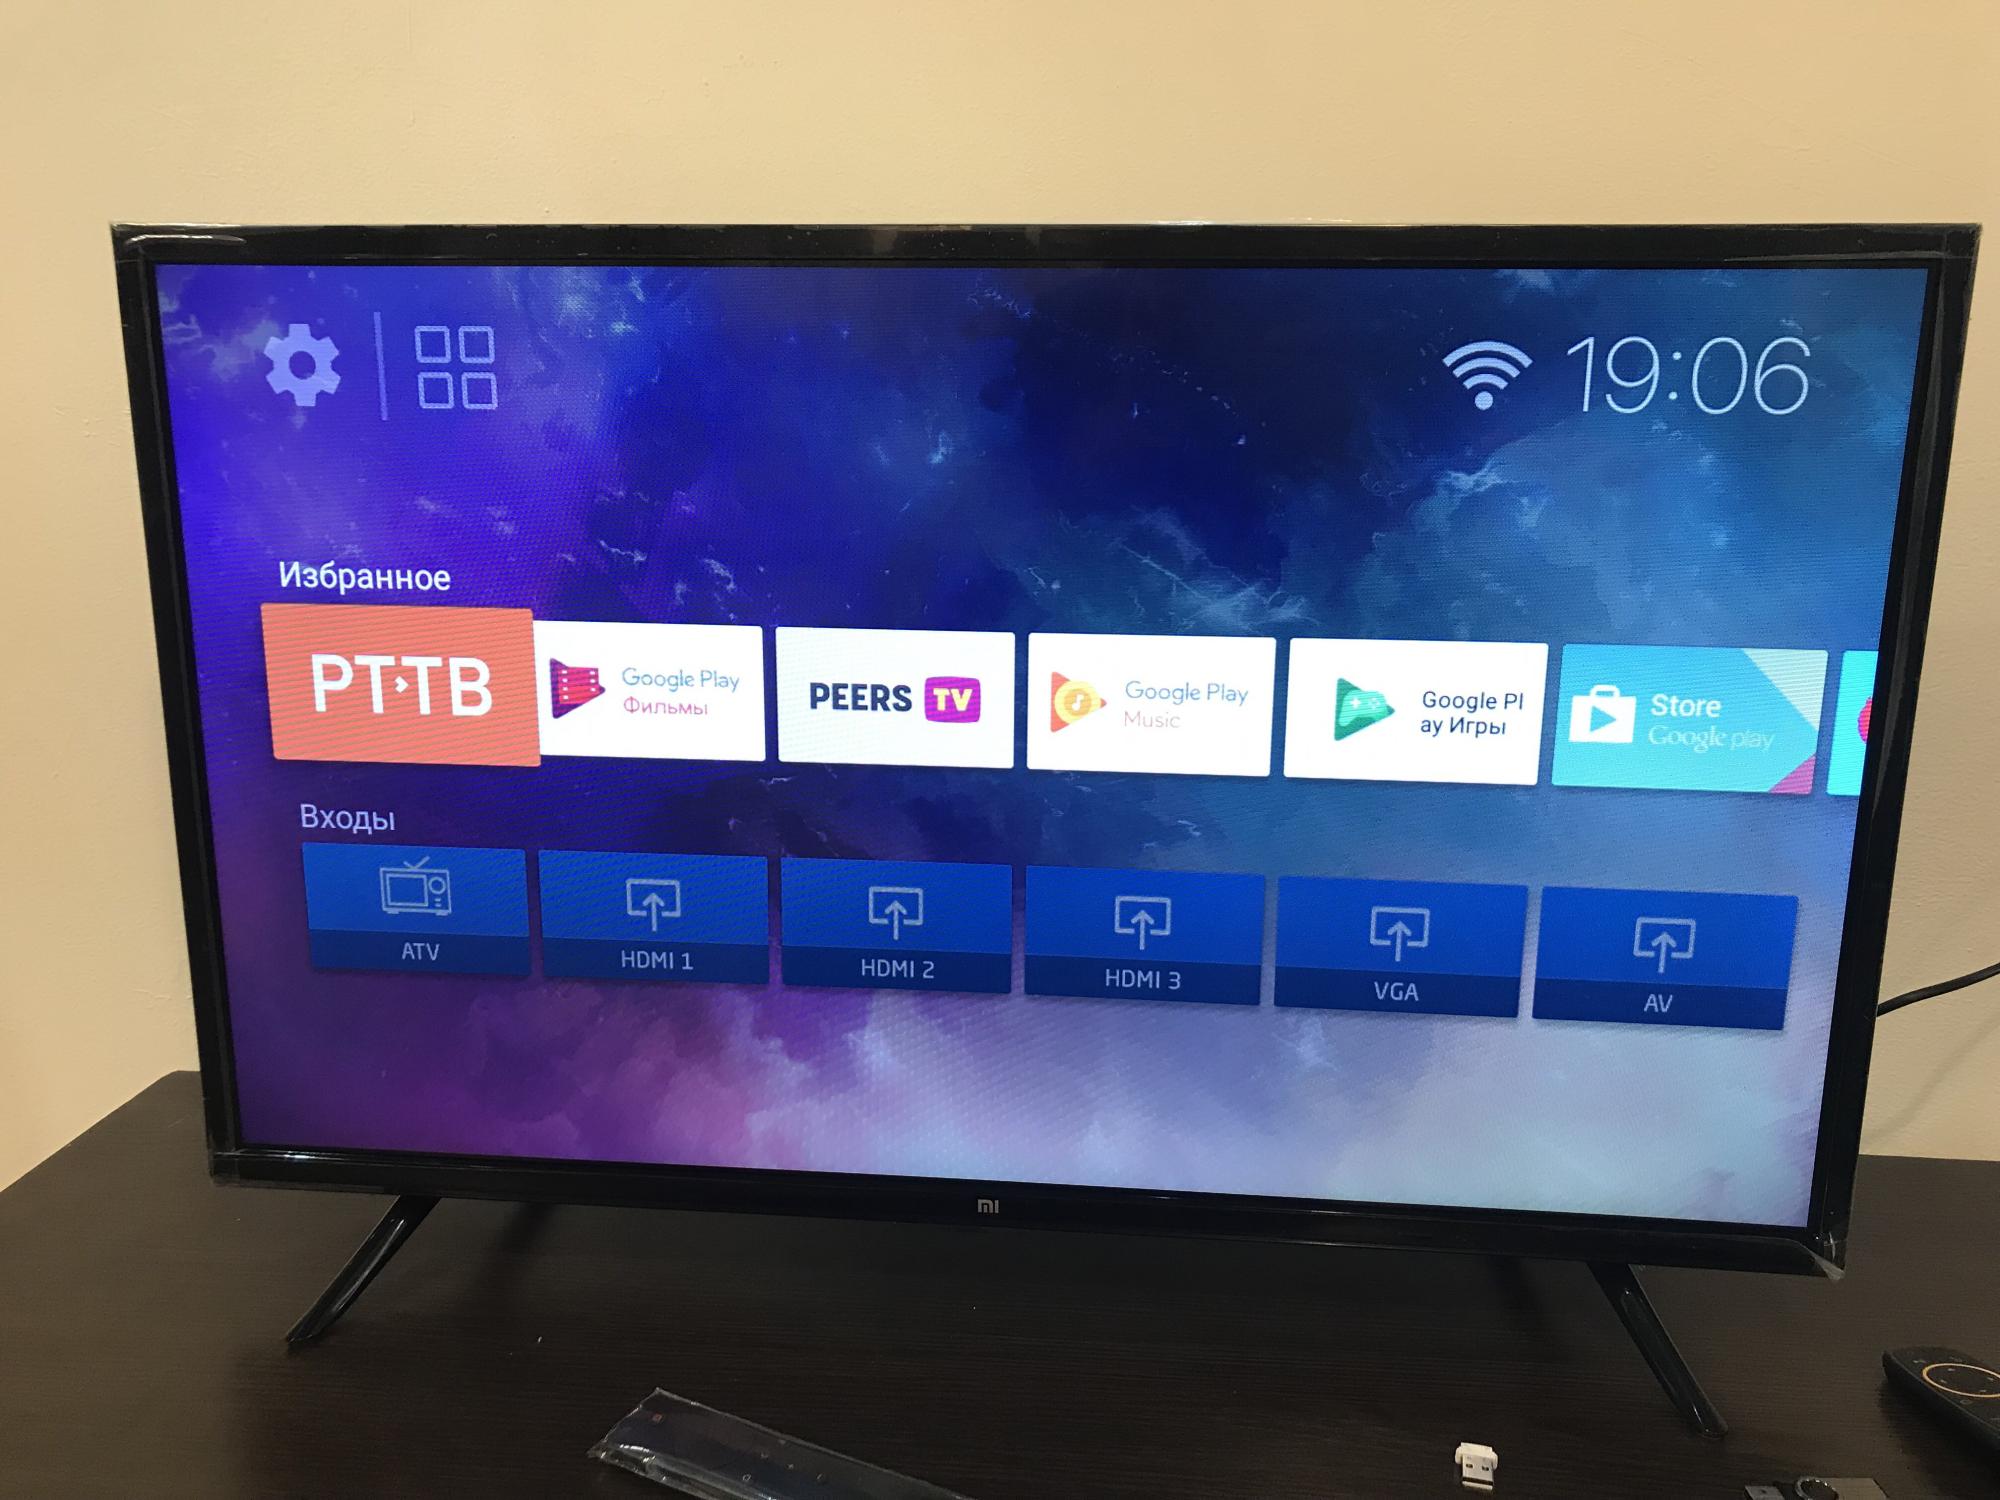 Днс телевизоры смарт 32 дюйма. Телевизор хиаоми 32 дюйма смарт ТВ. Xiaomi 32 дюйма. Xiaomi 4a телевизор. Xiaomi TV 4a 32.